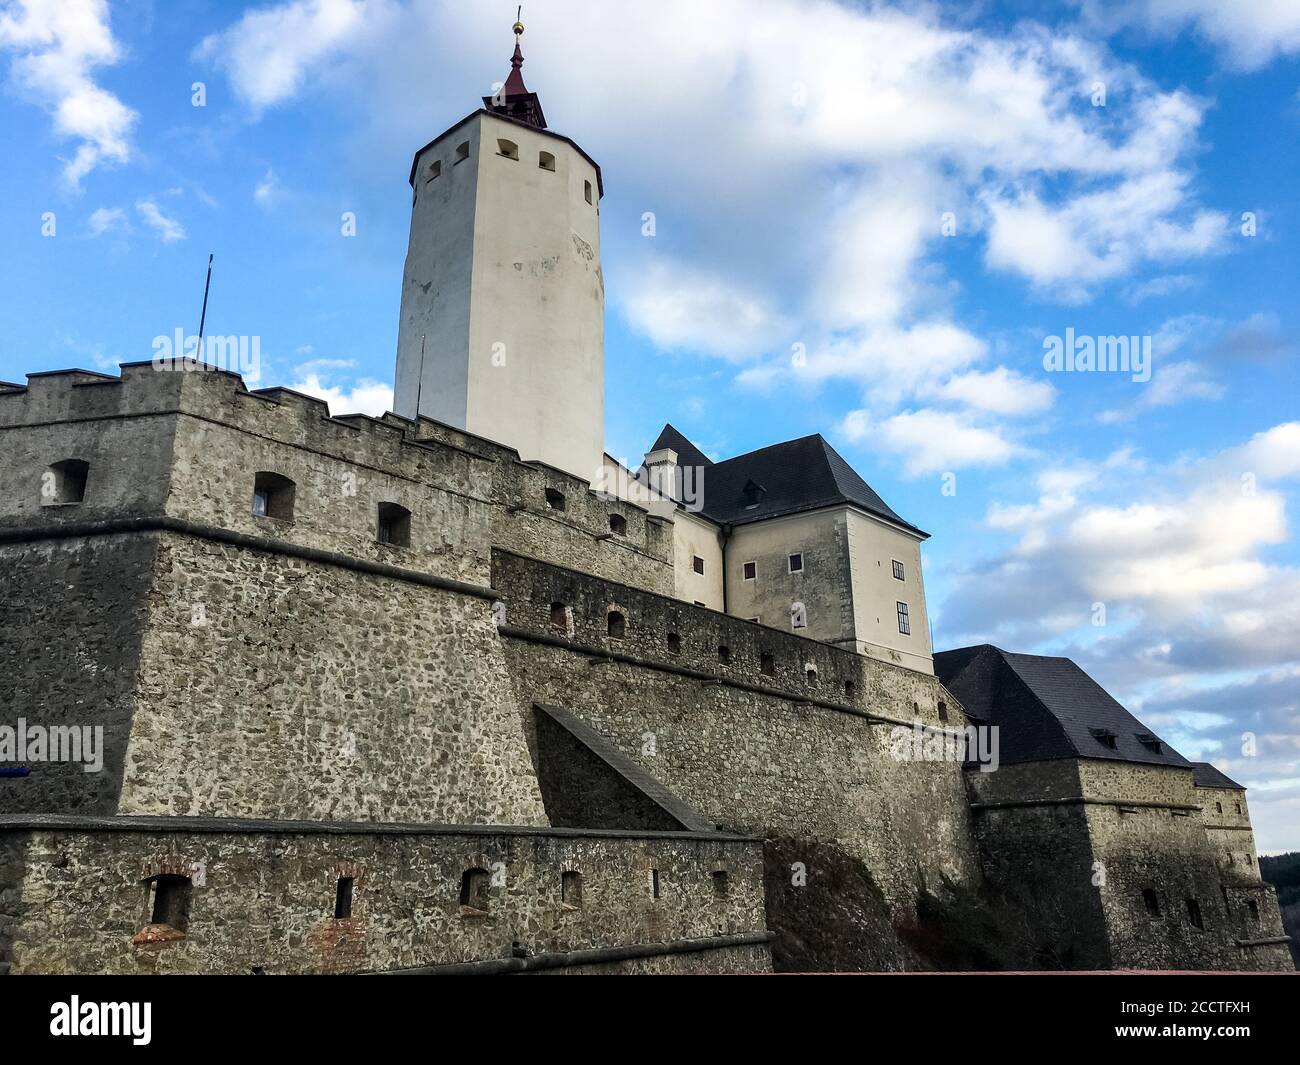 Castle of Forchtenstein in Burgenland, Austria. Stock Photo